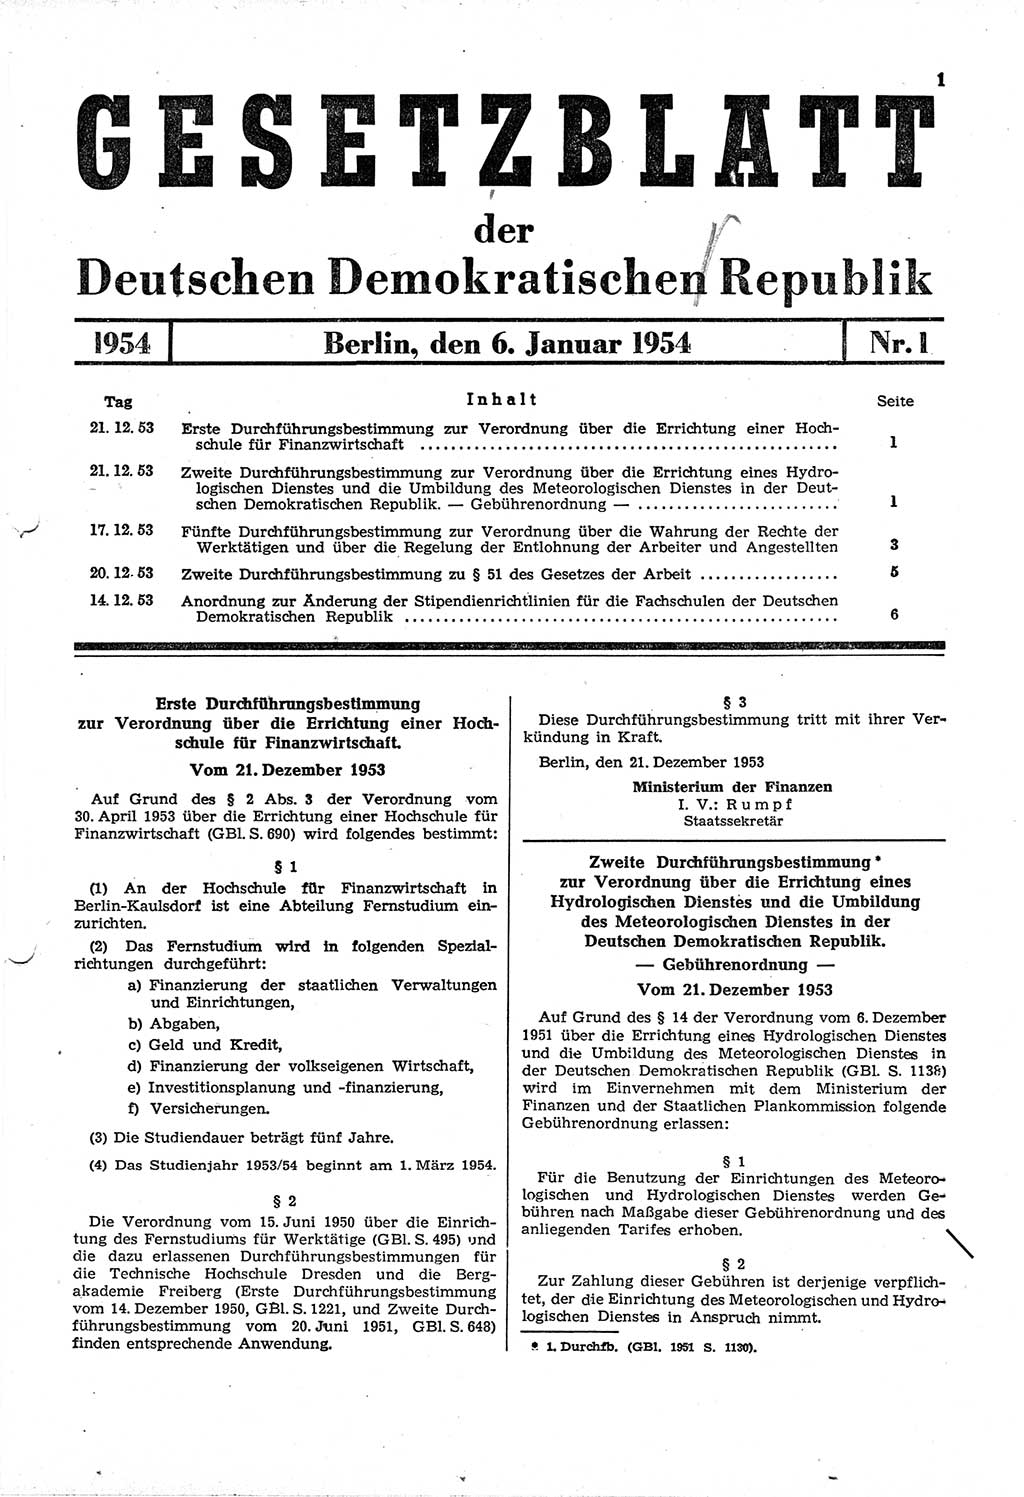 Gesetzblatt (GBl.) der Deutschen Demokratischen Republik (DDR) 1954, Seite 1 (GBl. DDR 1954, S. 1)